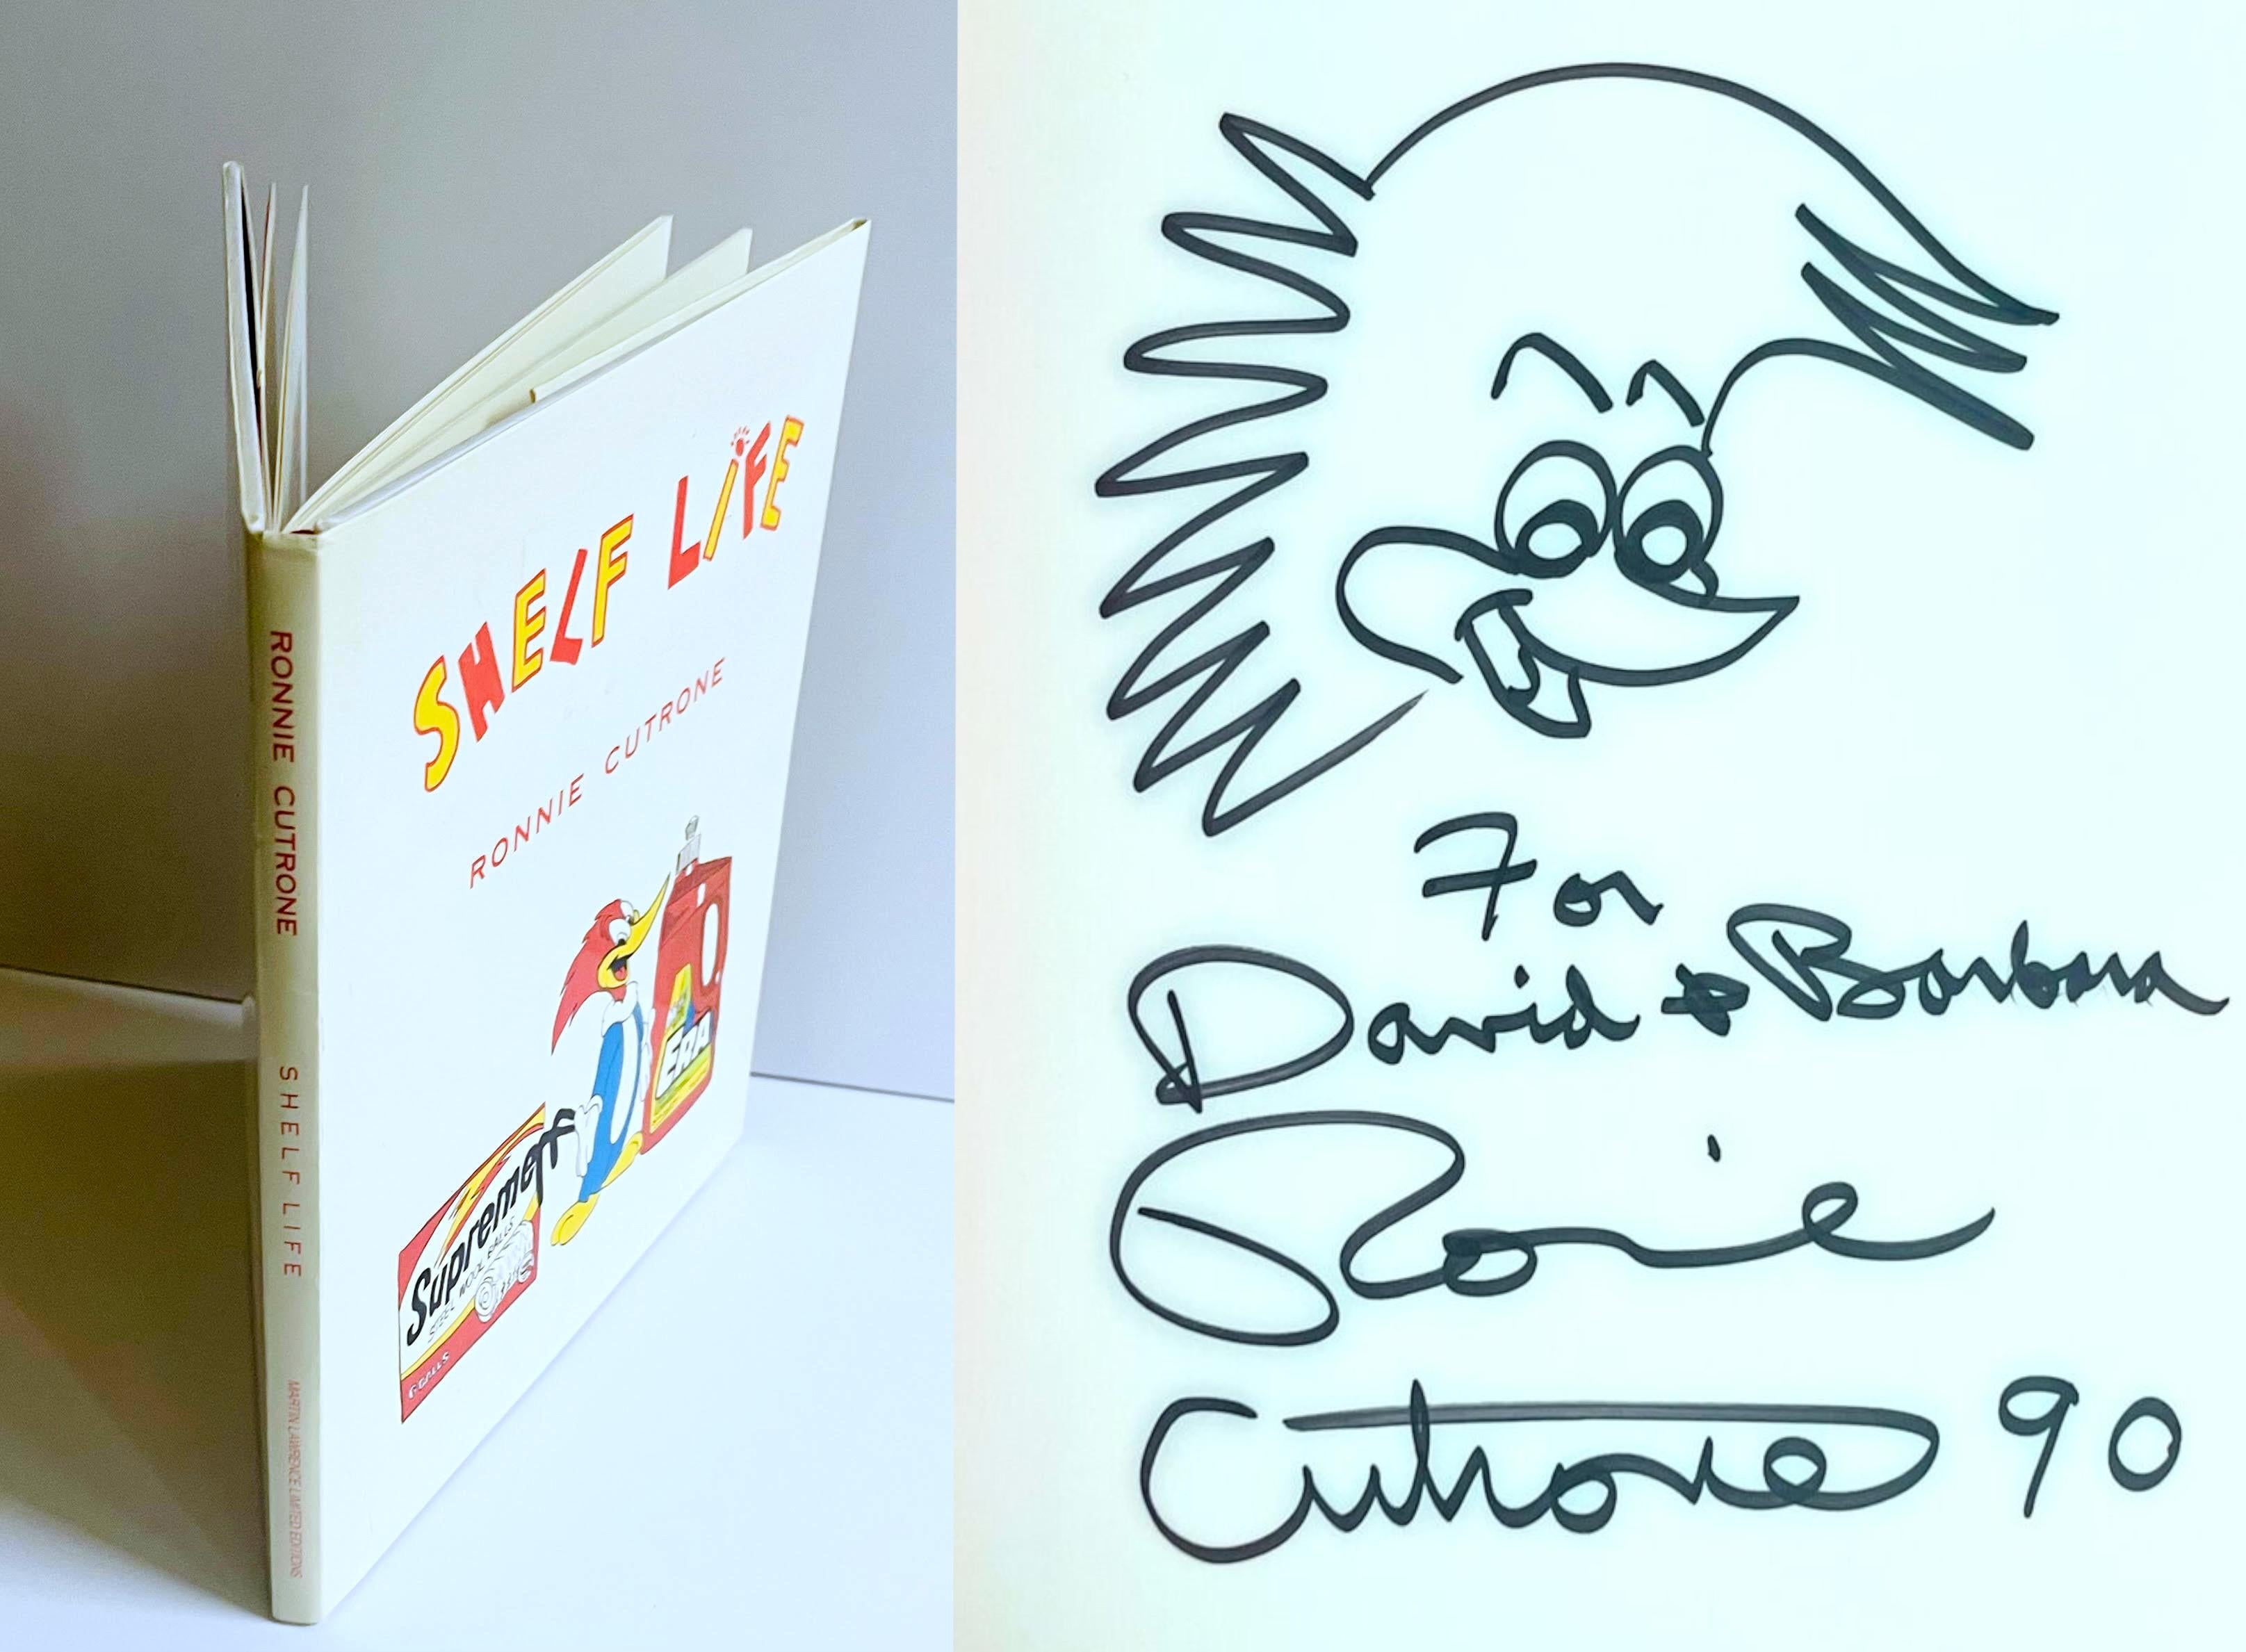 Ronnie Cutrone
Original-Vogelzeichnung (handsigniert und beschriftet von Ronnie Cutrone), 1990
Signierte Originalzeichnung in Marker in gebundener Monographie mit Schutzumschlag
Fett signiert, datiert und beschriftet von Ronnie Cutrone auf der